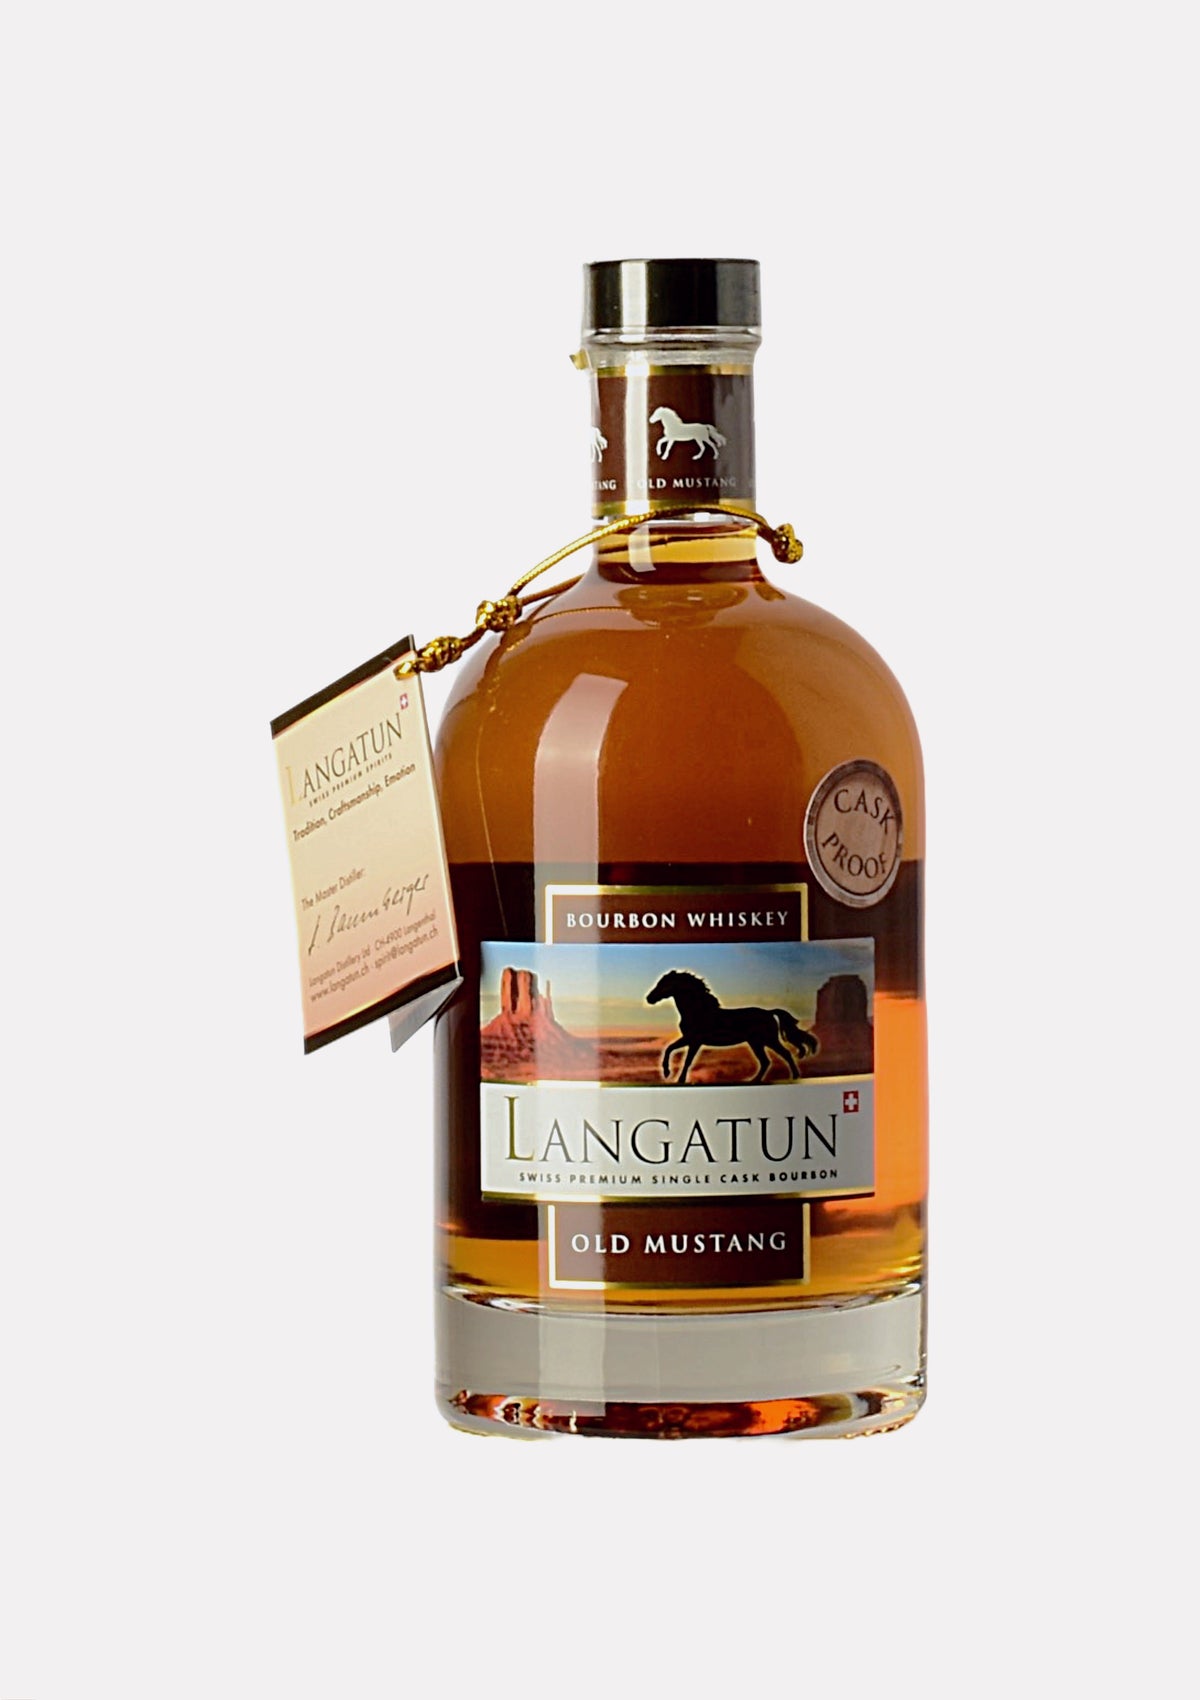 Langatun Old Mustang Bourbon Whiskey 2009- 2013